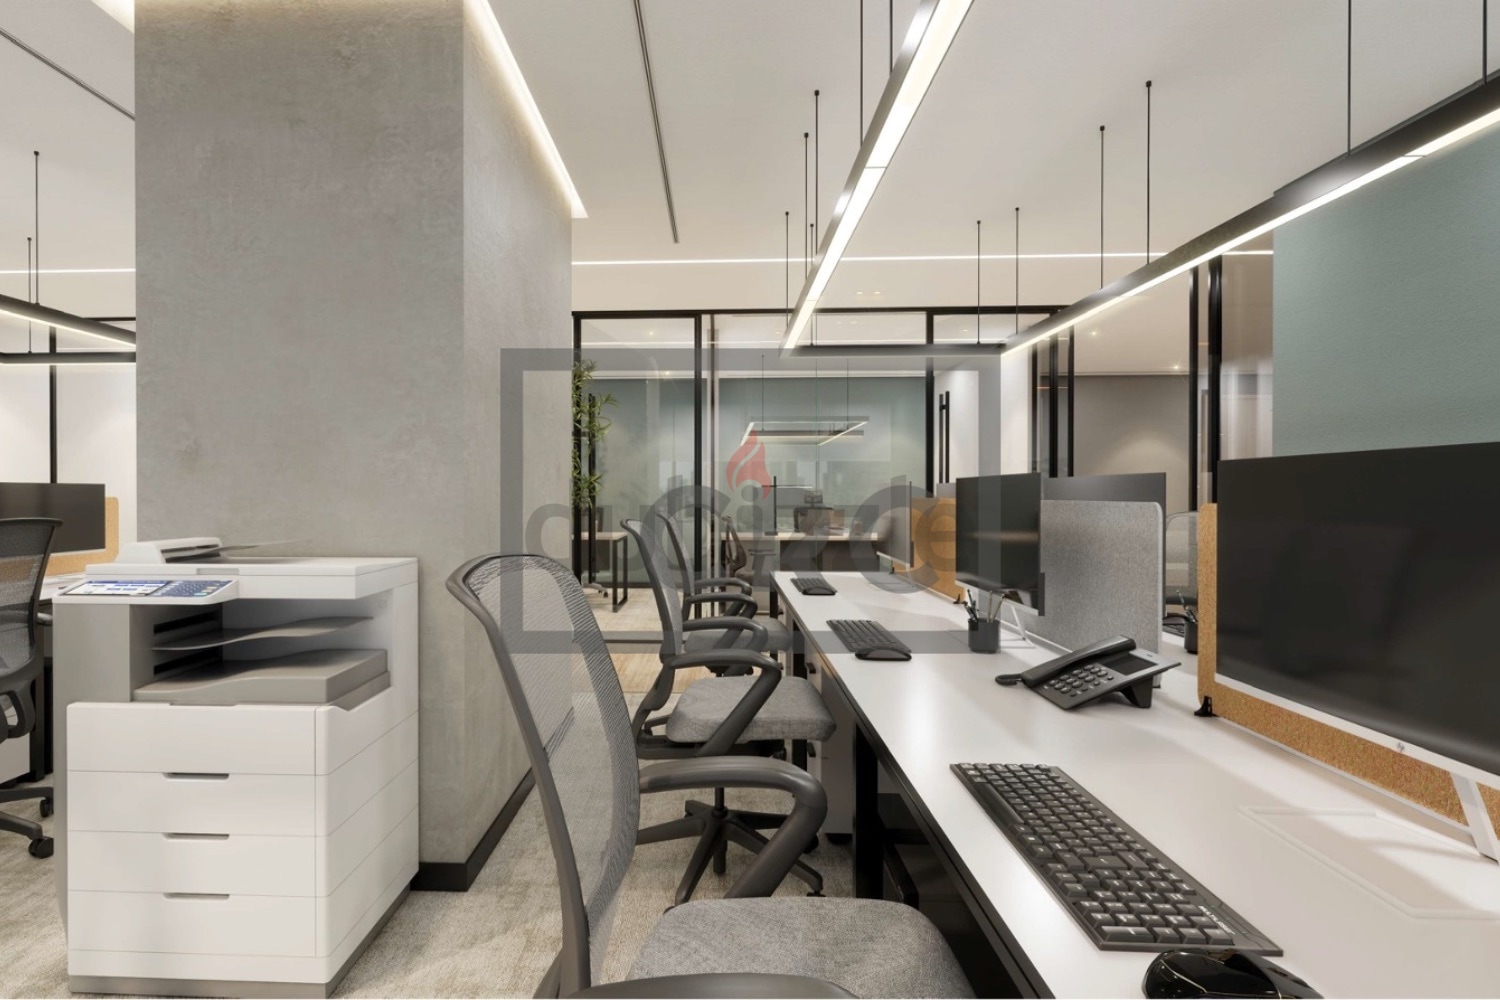 Office For Rent | High Floor| Full View Of Jlt